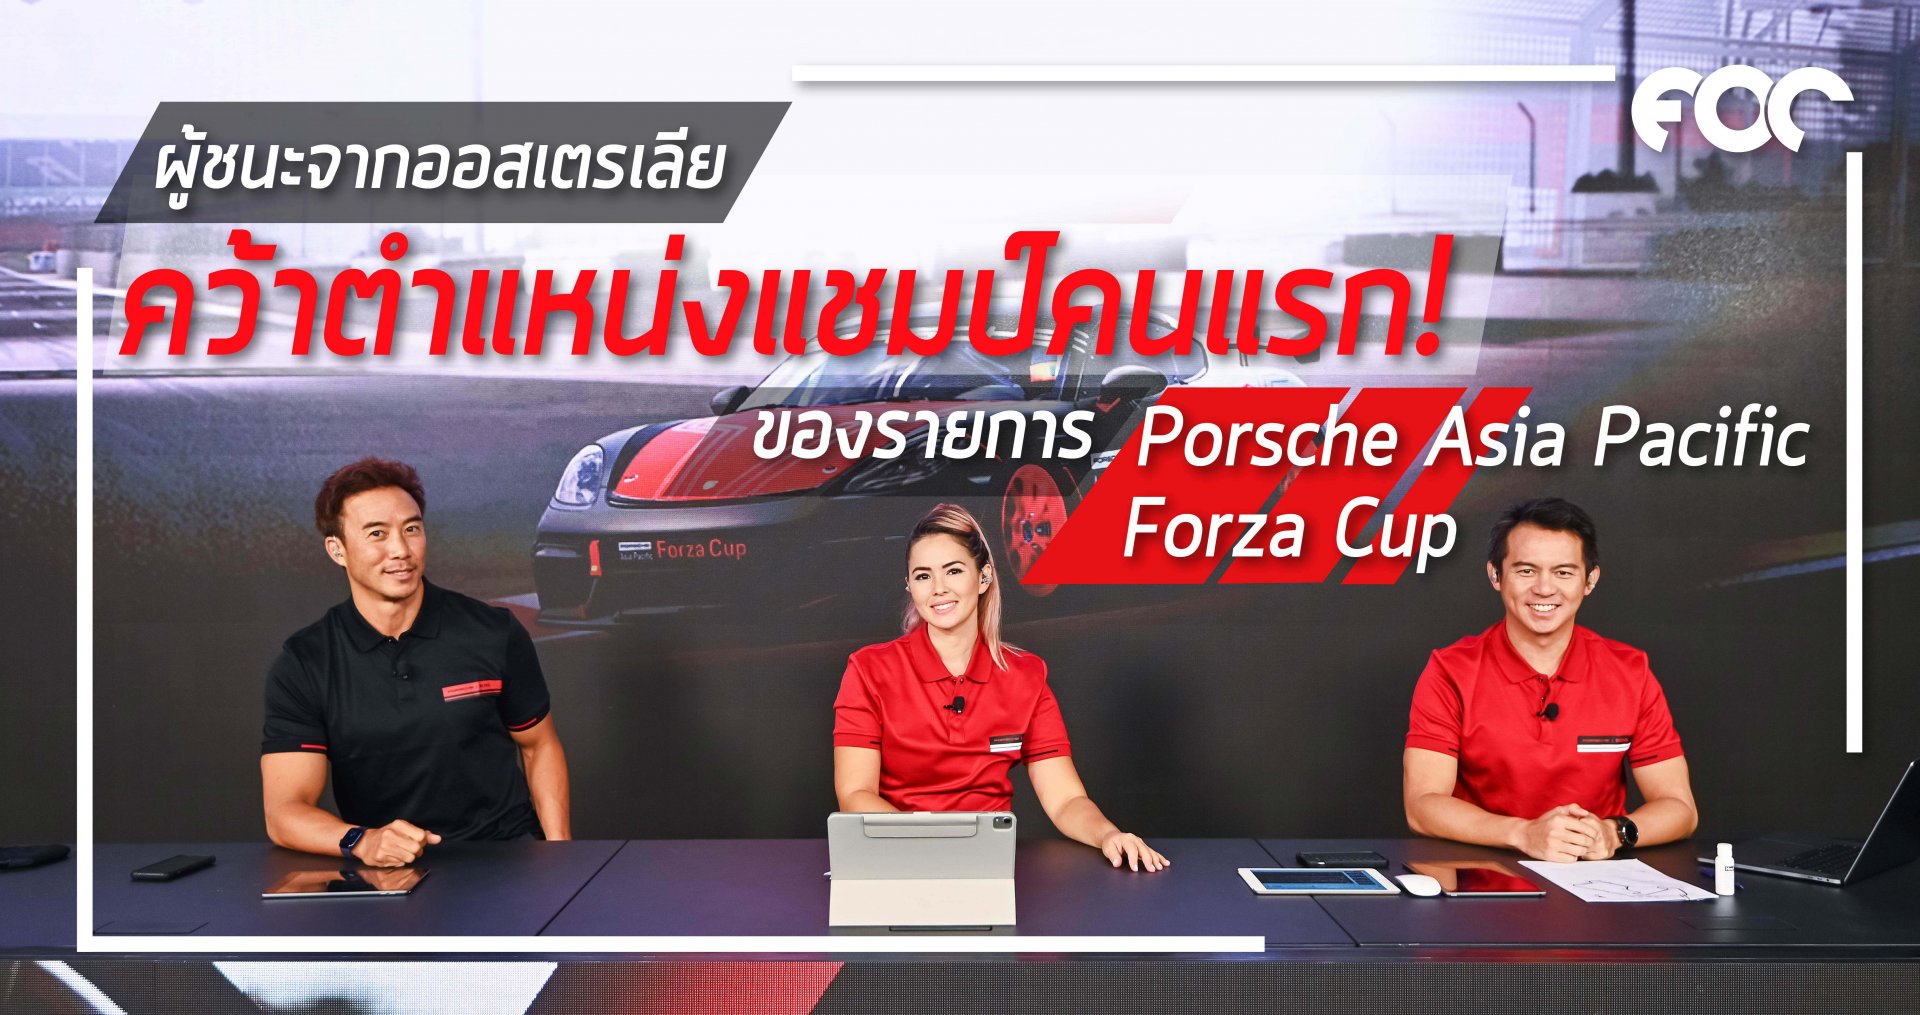 ผู้ชนะจากออสเตรเลีย คว้าตำแหน่งแชมป์คนแรกของรายการ Porsche Asia Pacific Forza Cup ทัวร์นาเมนต์สุดดุเดือด จากผู้เข้าร่วมแข่งขันเกือบ 400 ราย